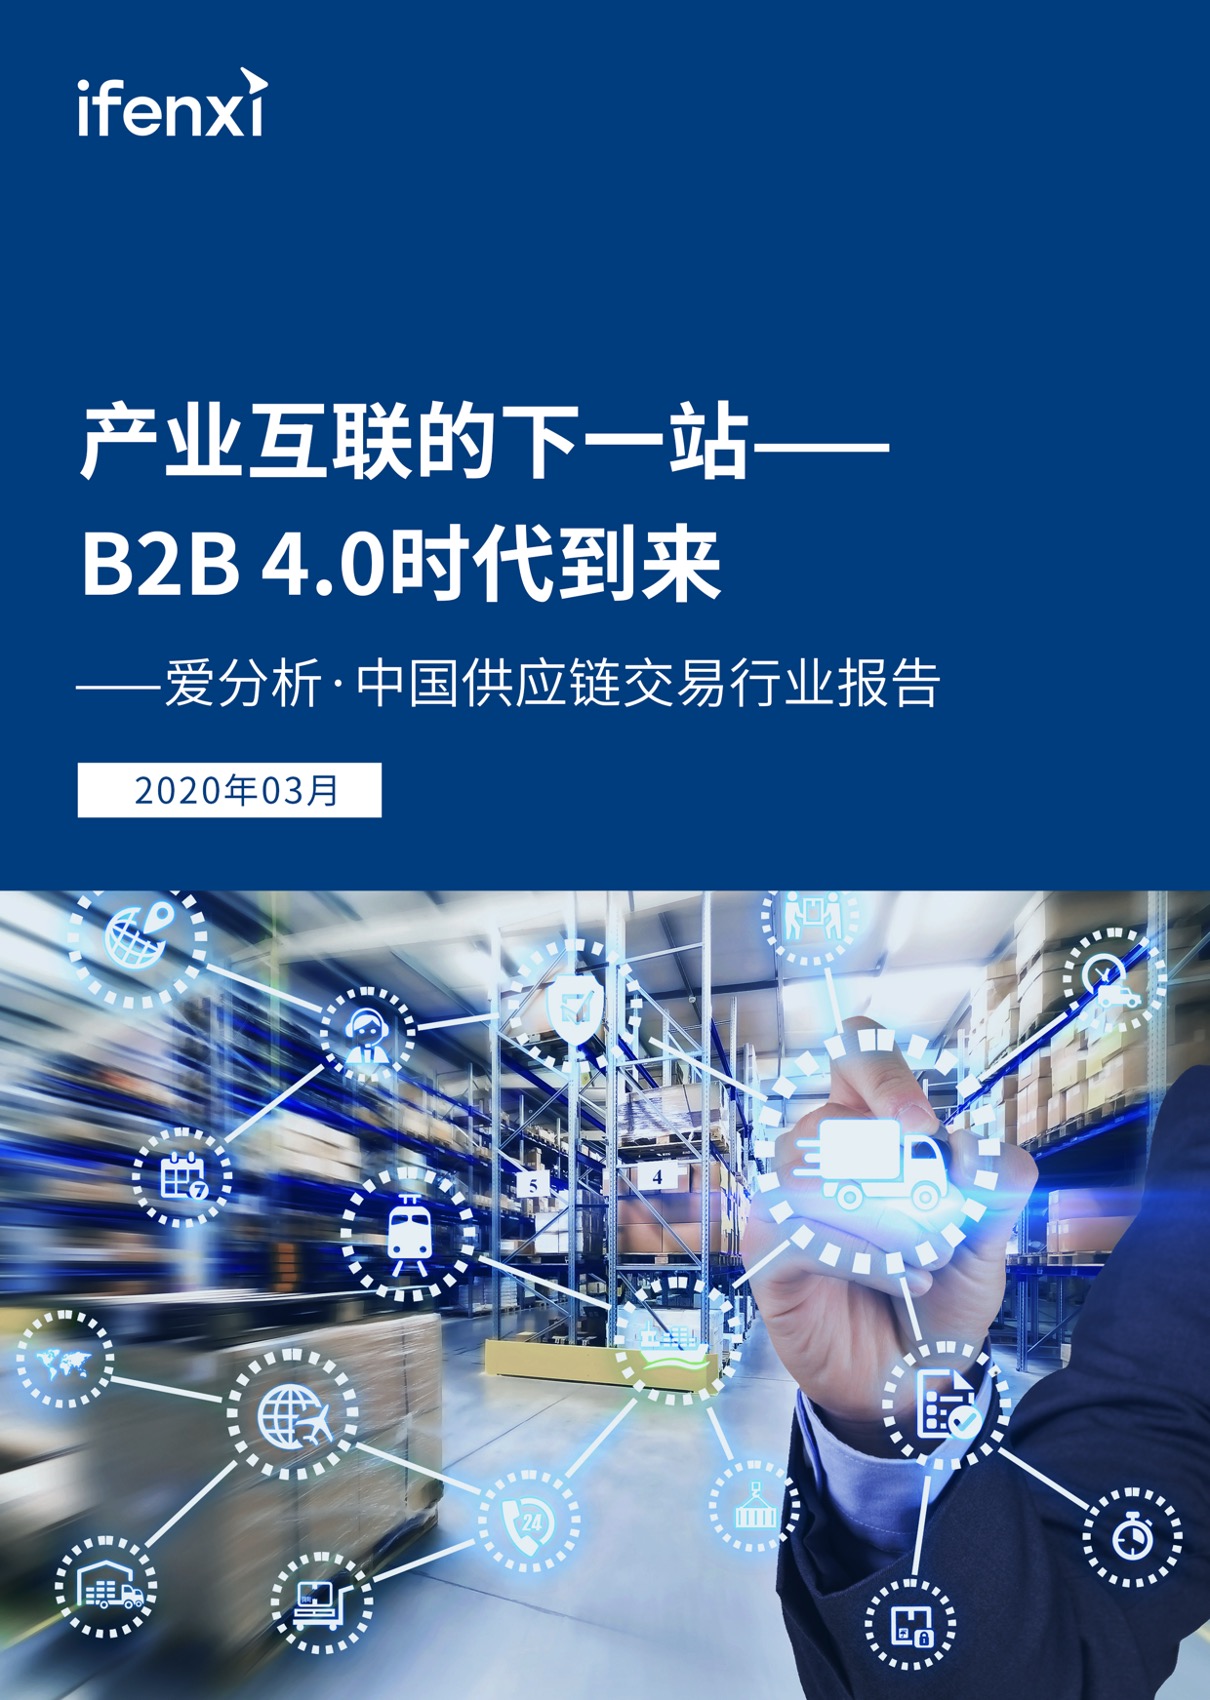 产业互联的下一站：B2B 4.0时代到来 | 爱分析报告-爱分析ifenxi